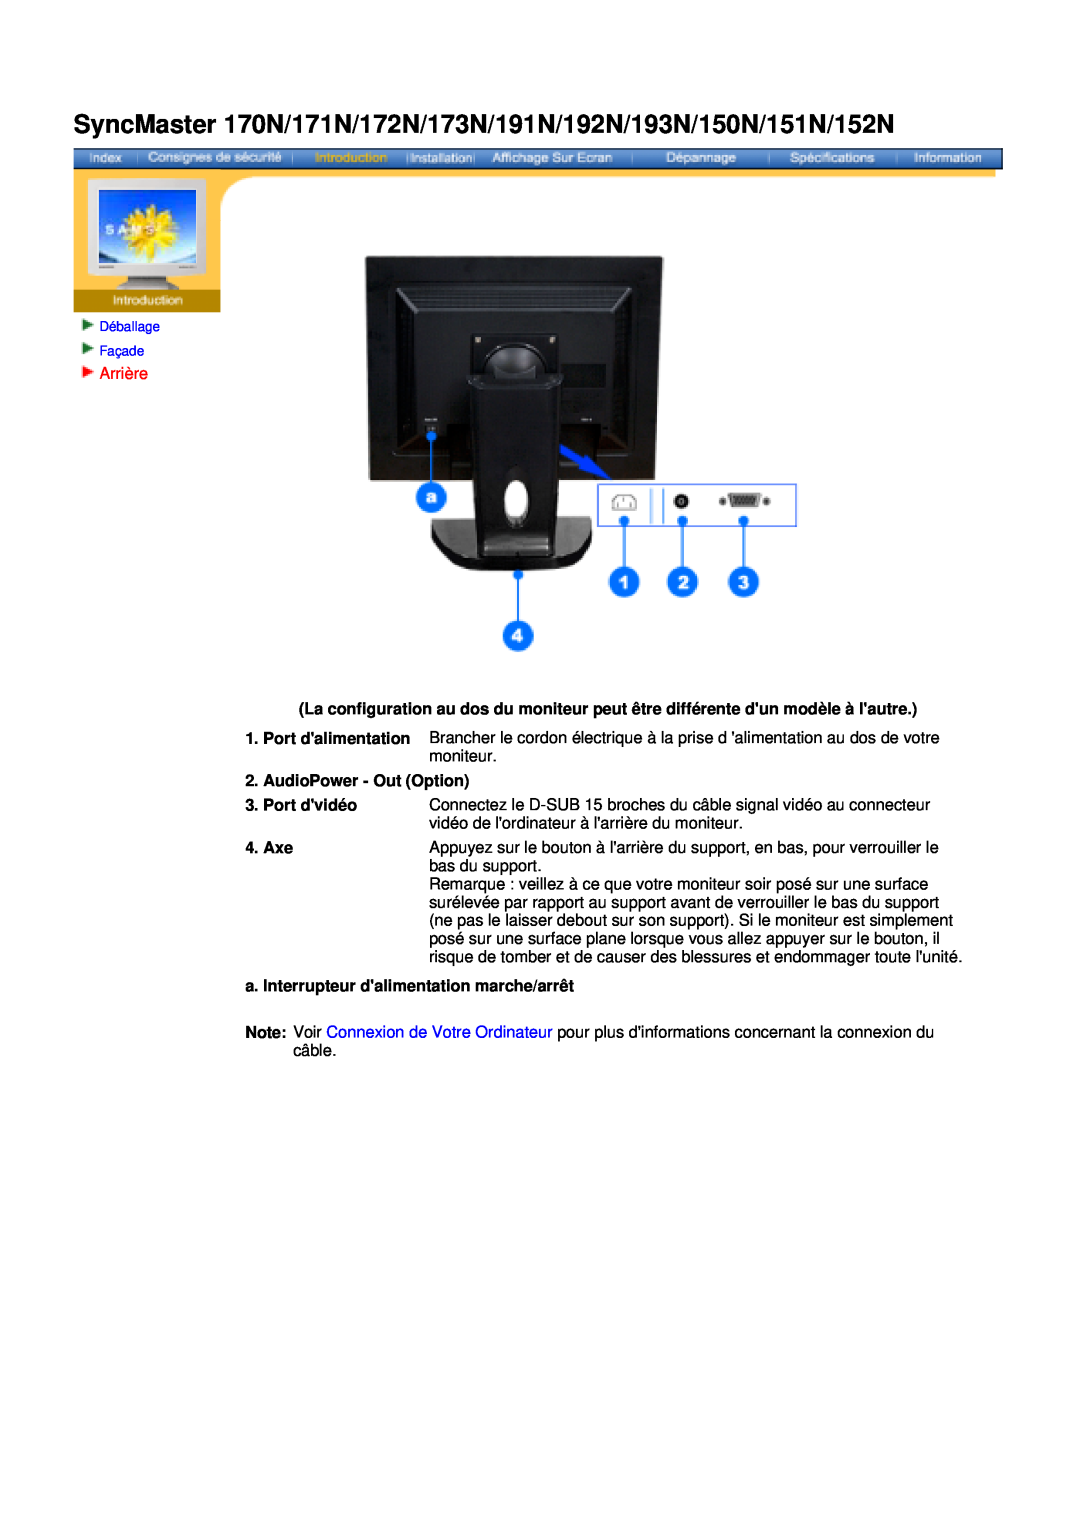 Samsung NB17ASHS/EDC manual SyncMaster 170N/171N/172N/173N/191N/192N/193N/150N/151N/152N, Arrière, AudioPower - Out Option 